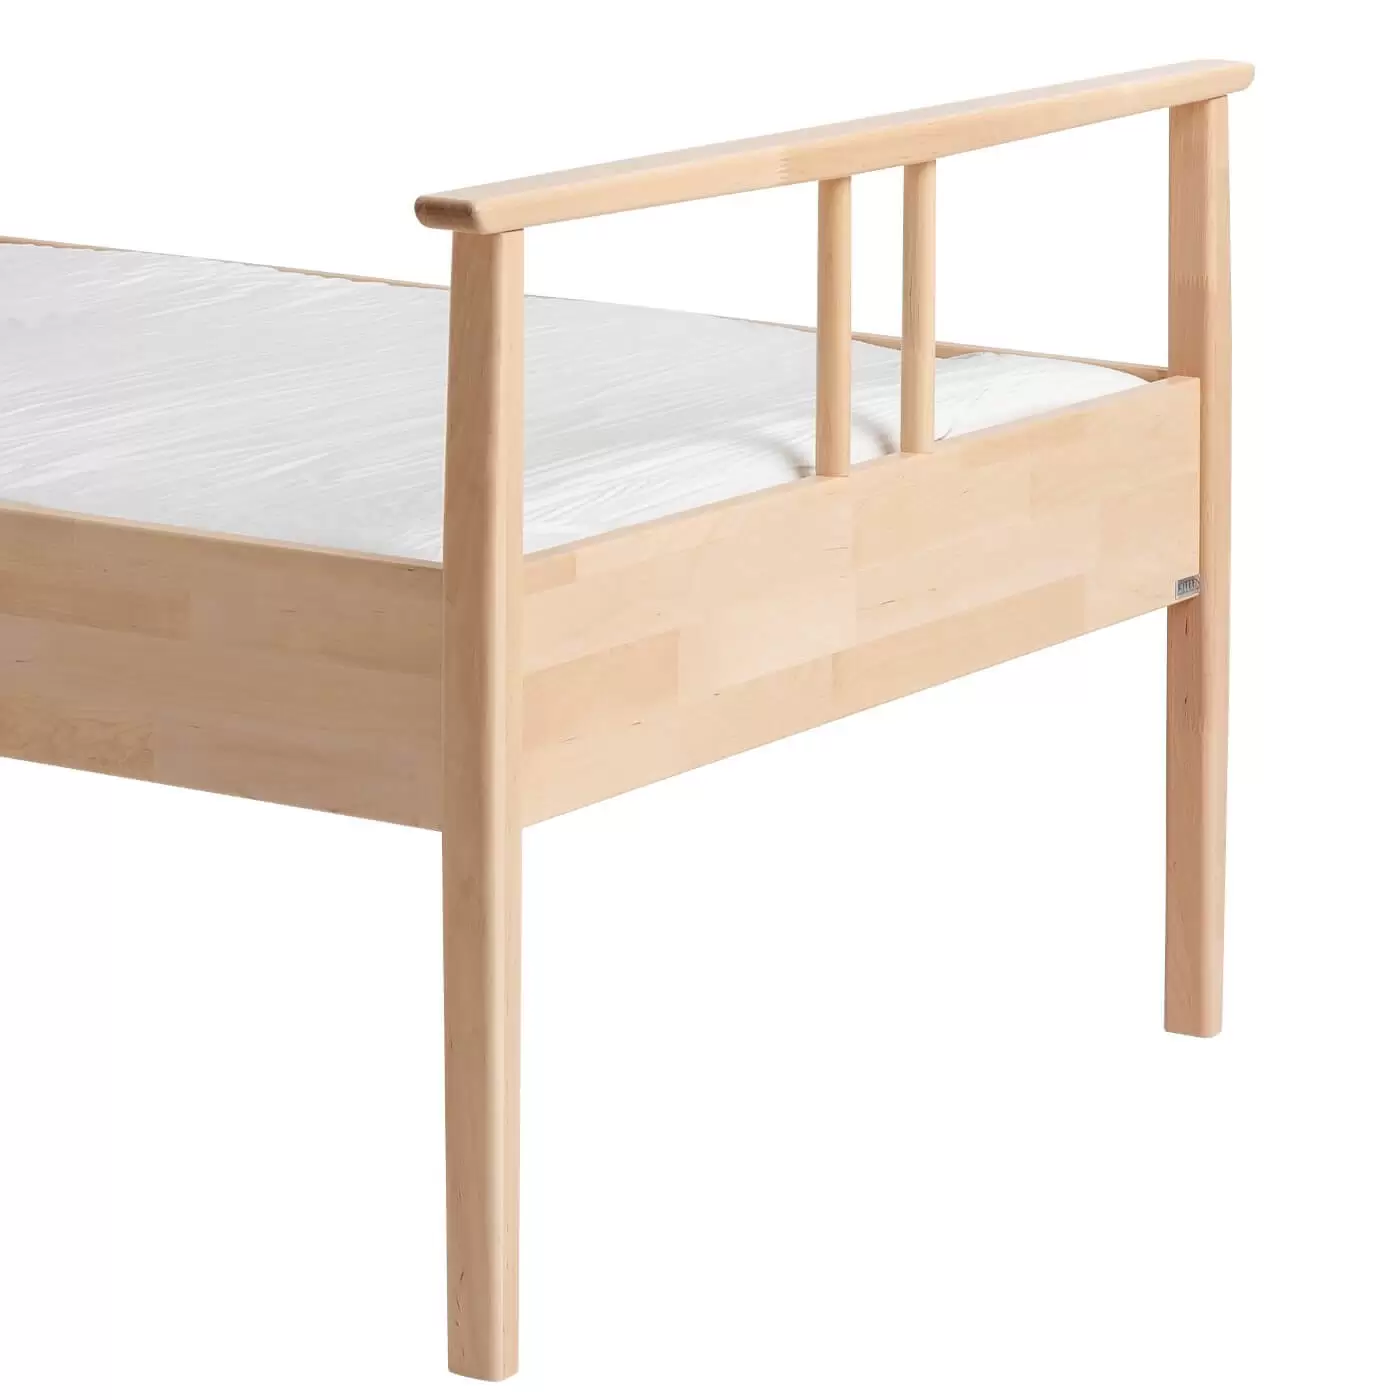 Łóżko drewniane 90x200 NOEL. Fragment z widokiem na wysokie nóżki łóżka z litego drewna brzozy skandynawskiej